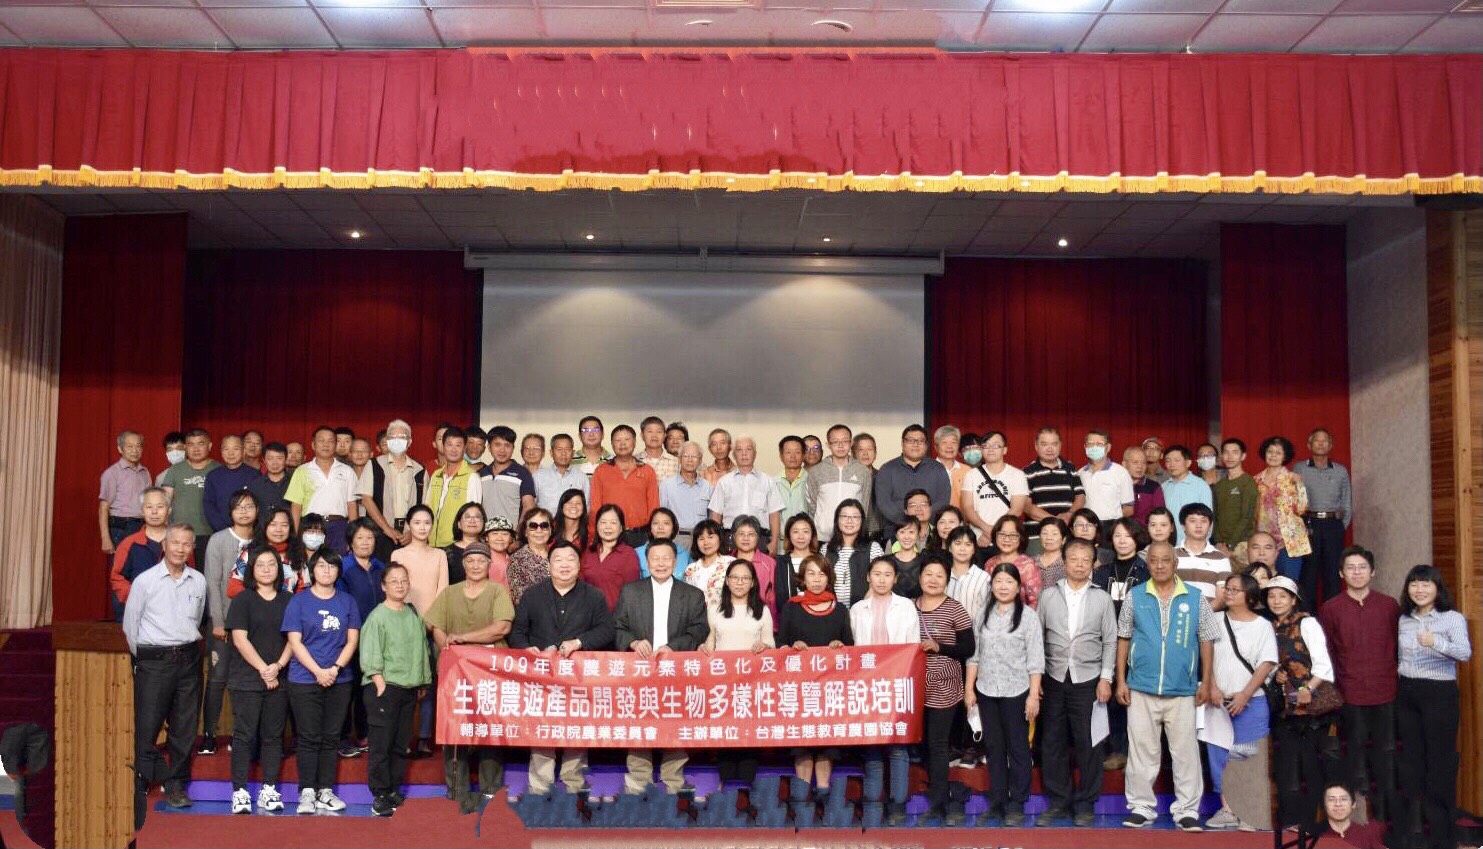 109年度生態農遊產品開發及生物多樣性導覽解說培訓暨專題演講-台灣生態教育農園協會